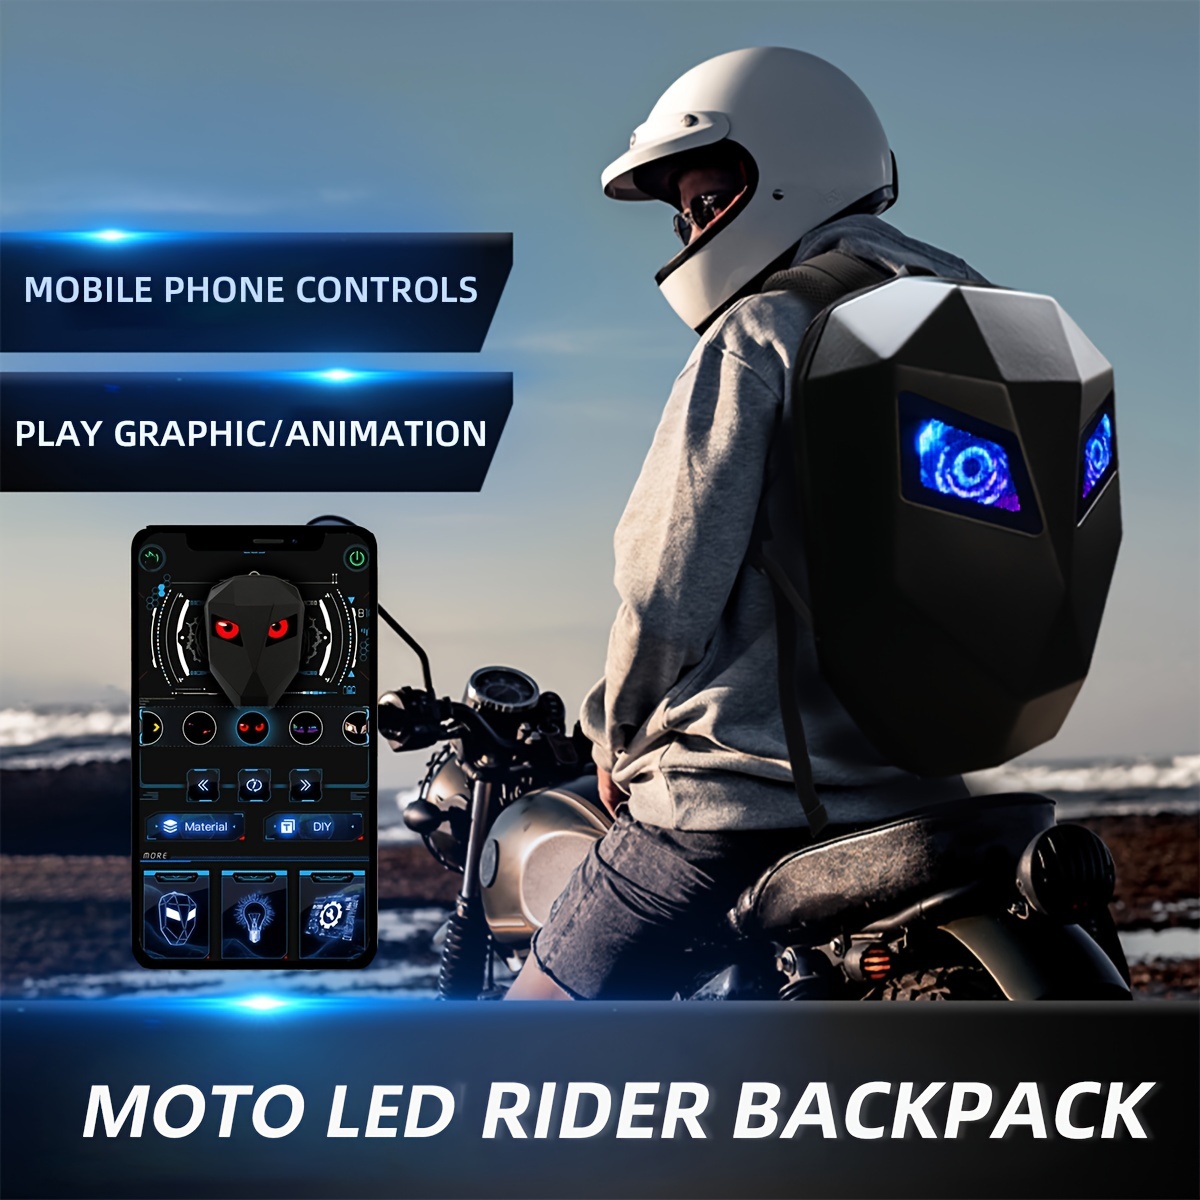 Sac de Moto Simple étanche en Tissu Oxford Sac de réservoir de Moto Sac à  Dos de Moto Sac de Queue de Moto Multifonctionnel Repos